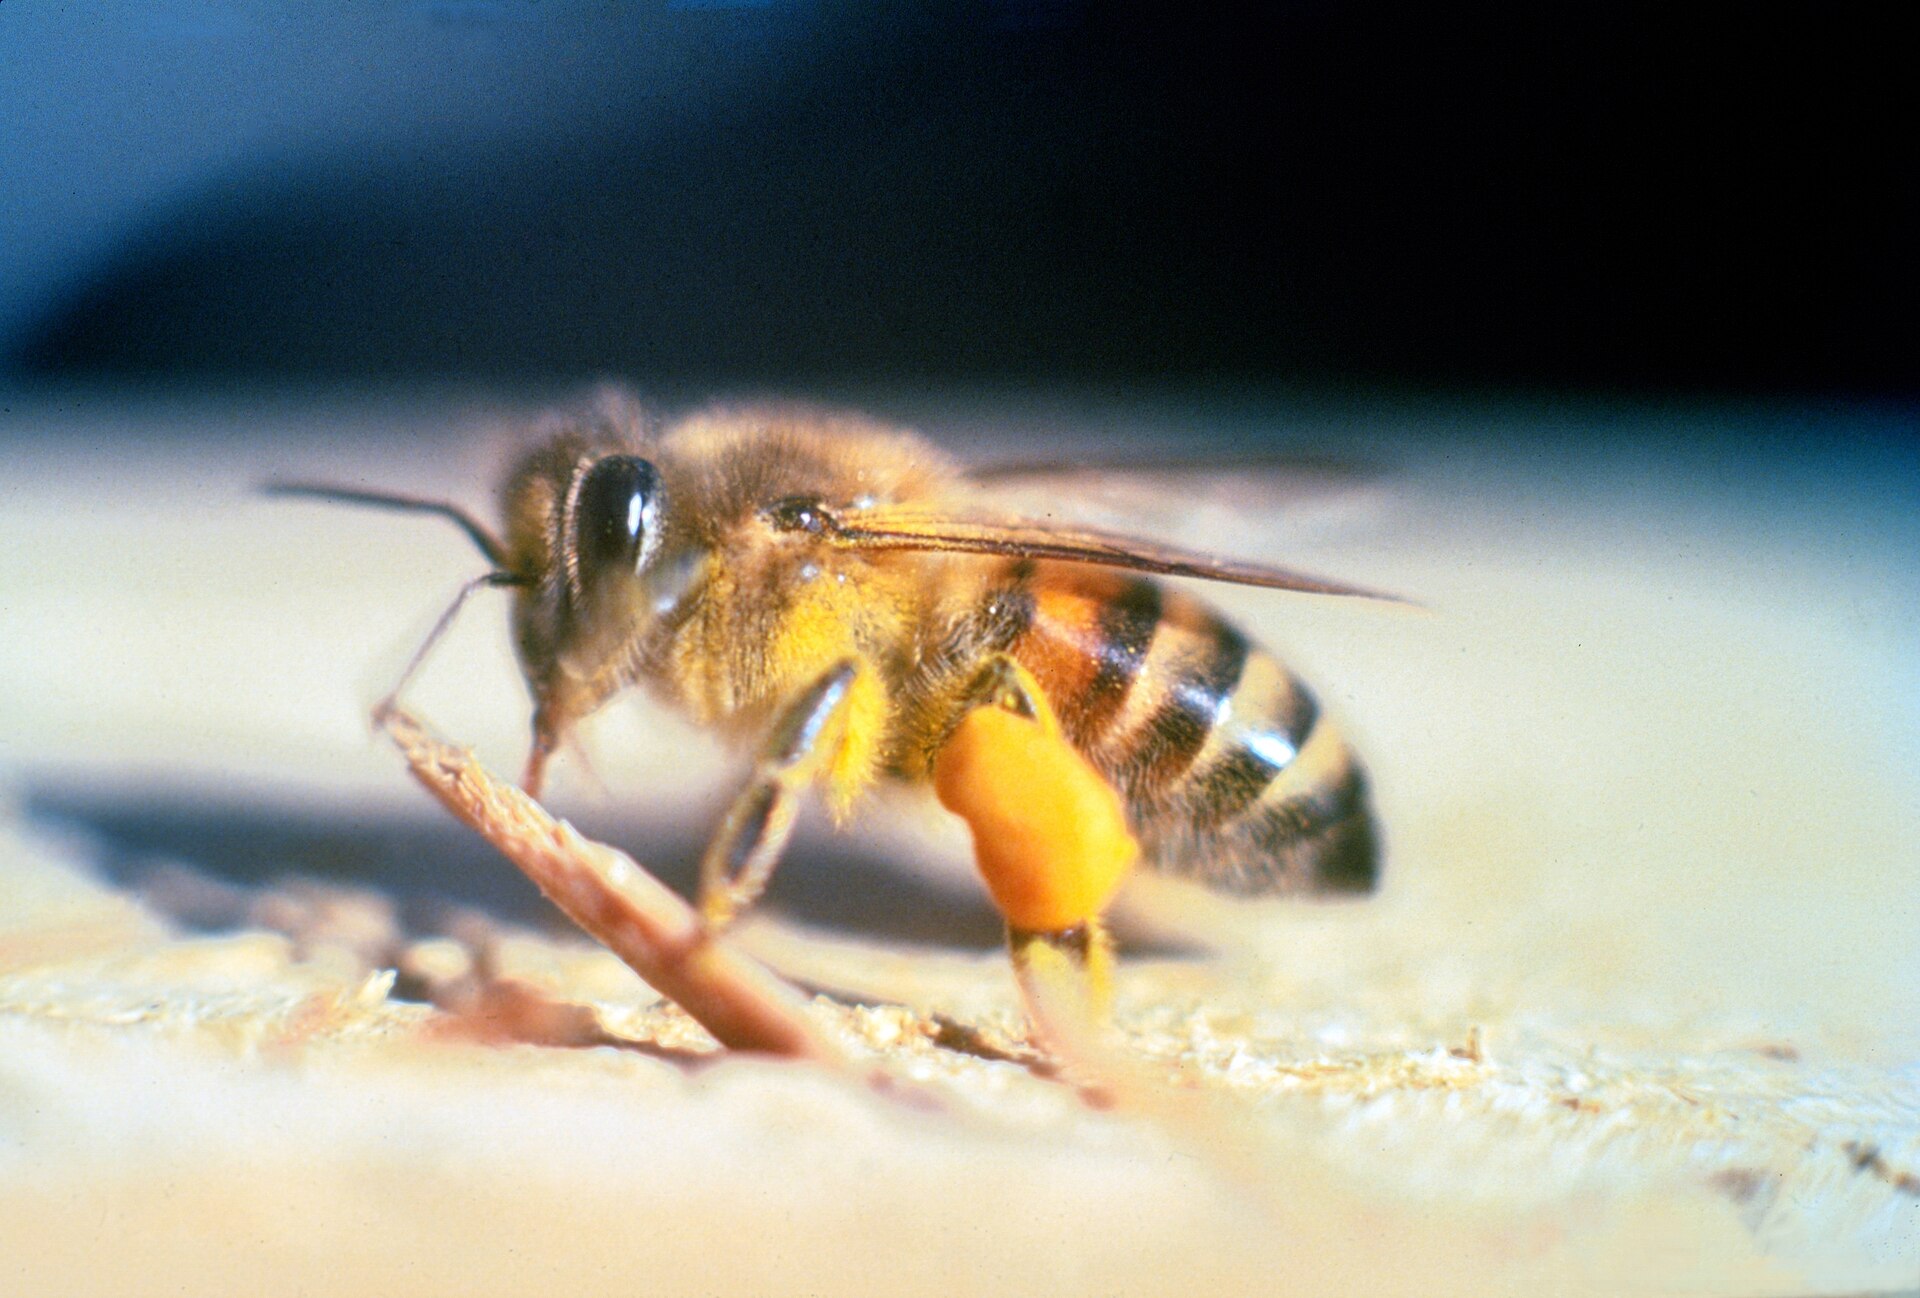 Créée dans les années 50 et échappée du laboratoire, cette espèce d'abeille africanisée a été conçue pour produire plus de miel au Brésil.